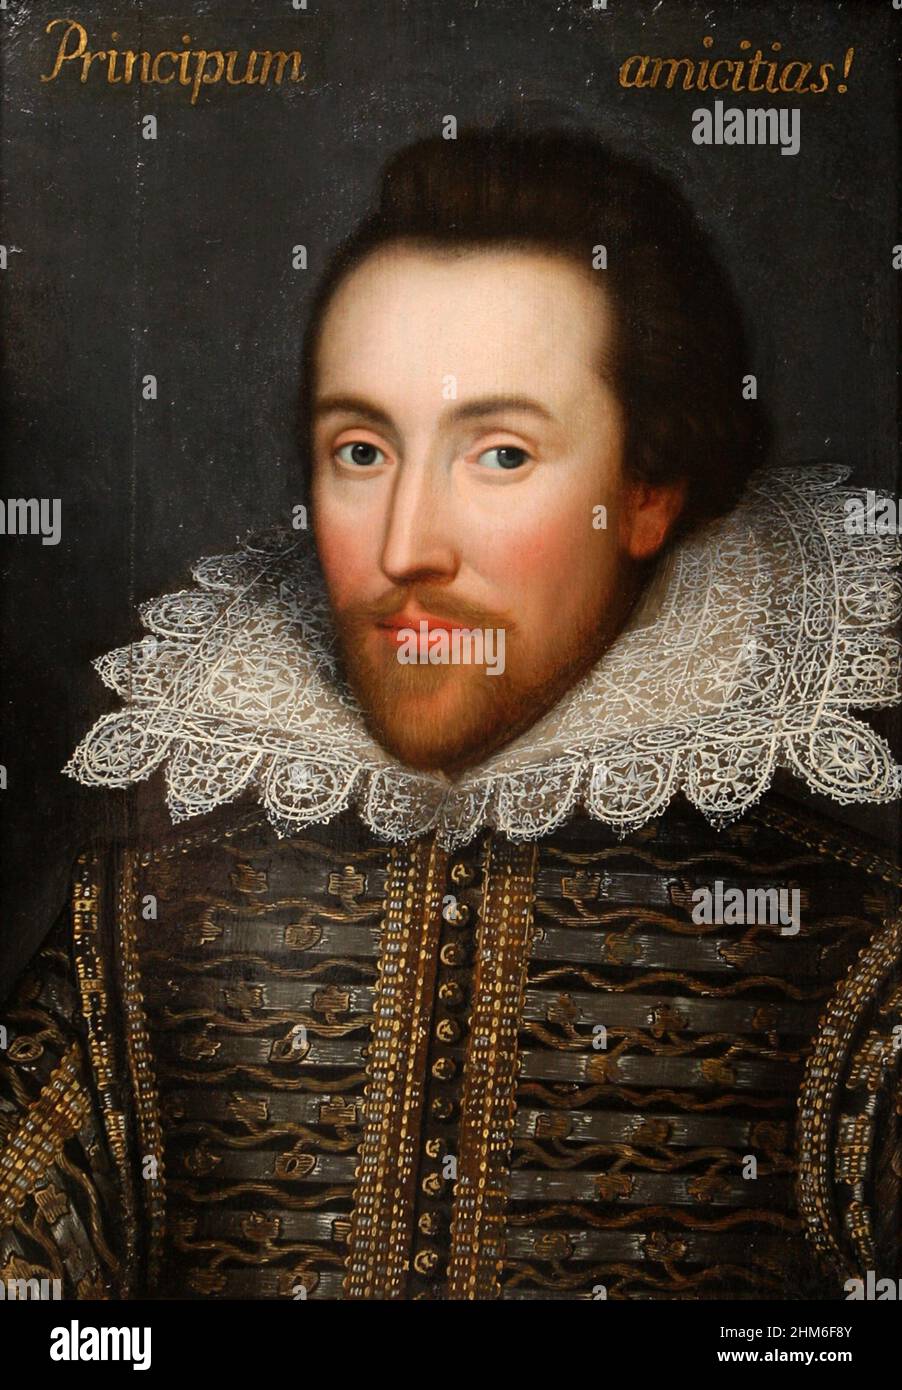 Das Cobbe-Porträt des englischen Dramatikers William Shakespeare. Das Cobbe-Porträt ist ein Gemälde eines Gentleman, das als Lebensporträt von William Shakespeare gilt. Stockfoto